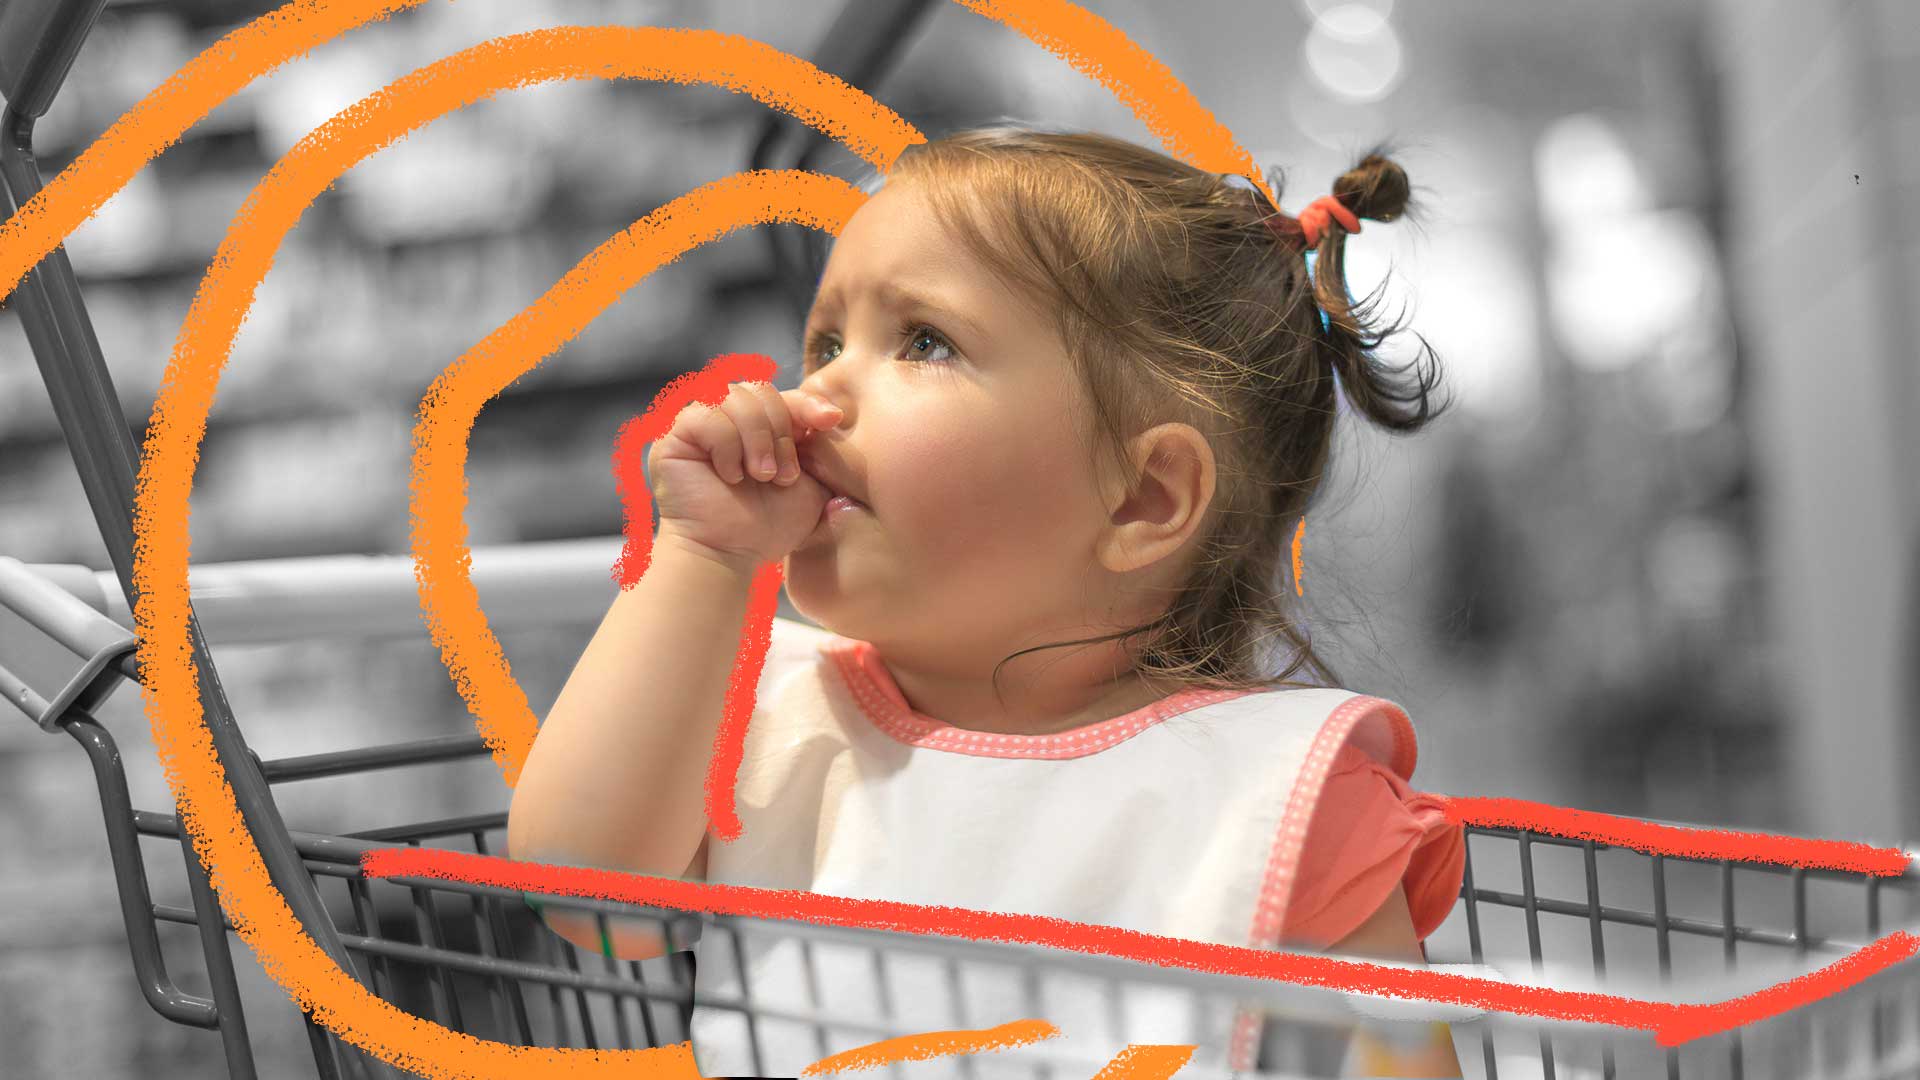 Chupar o dedo: foto em preto e branco, no centro um bebe está dentro de um carrinho de supermercado, chupando o dedo da mão esquerda.